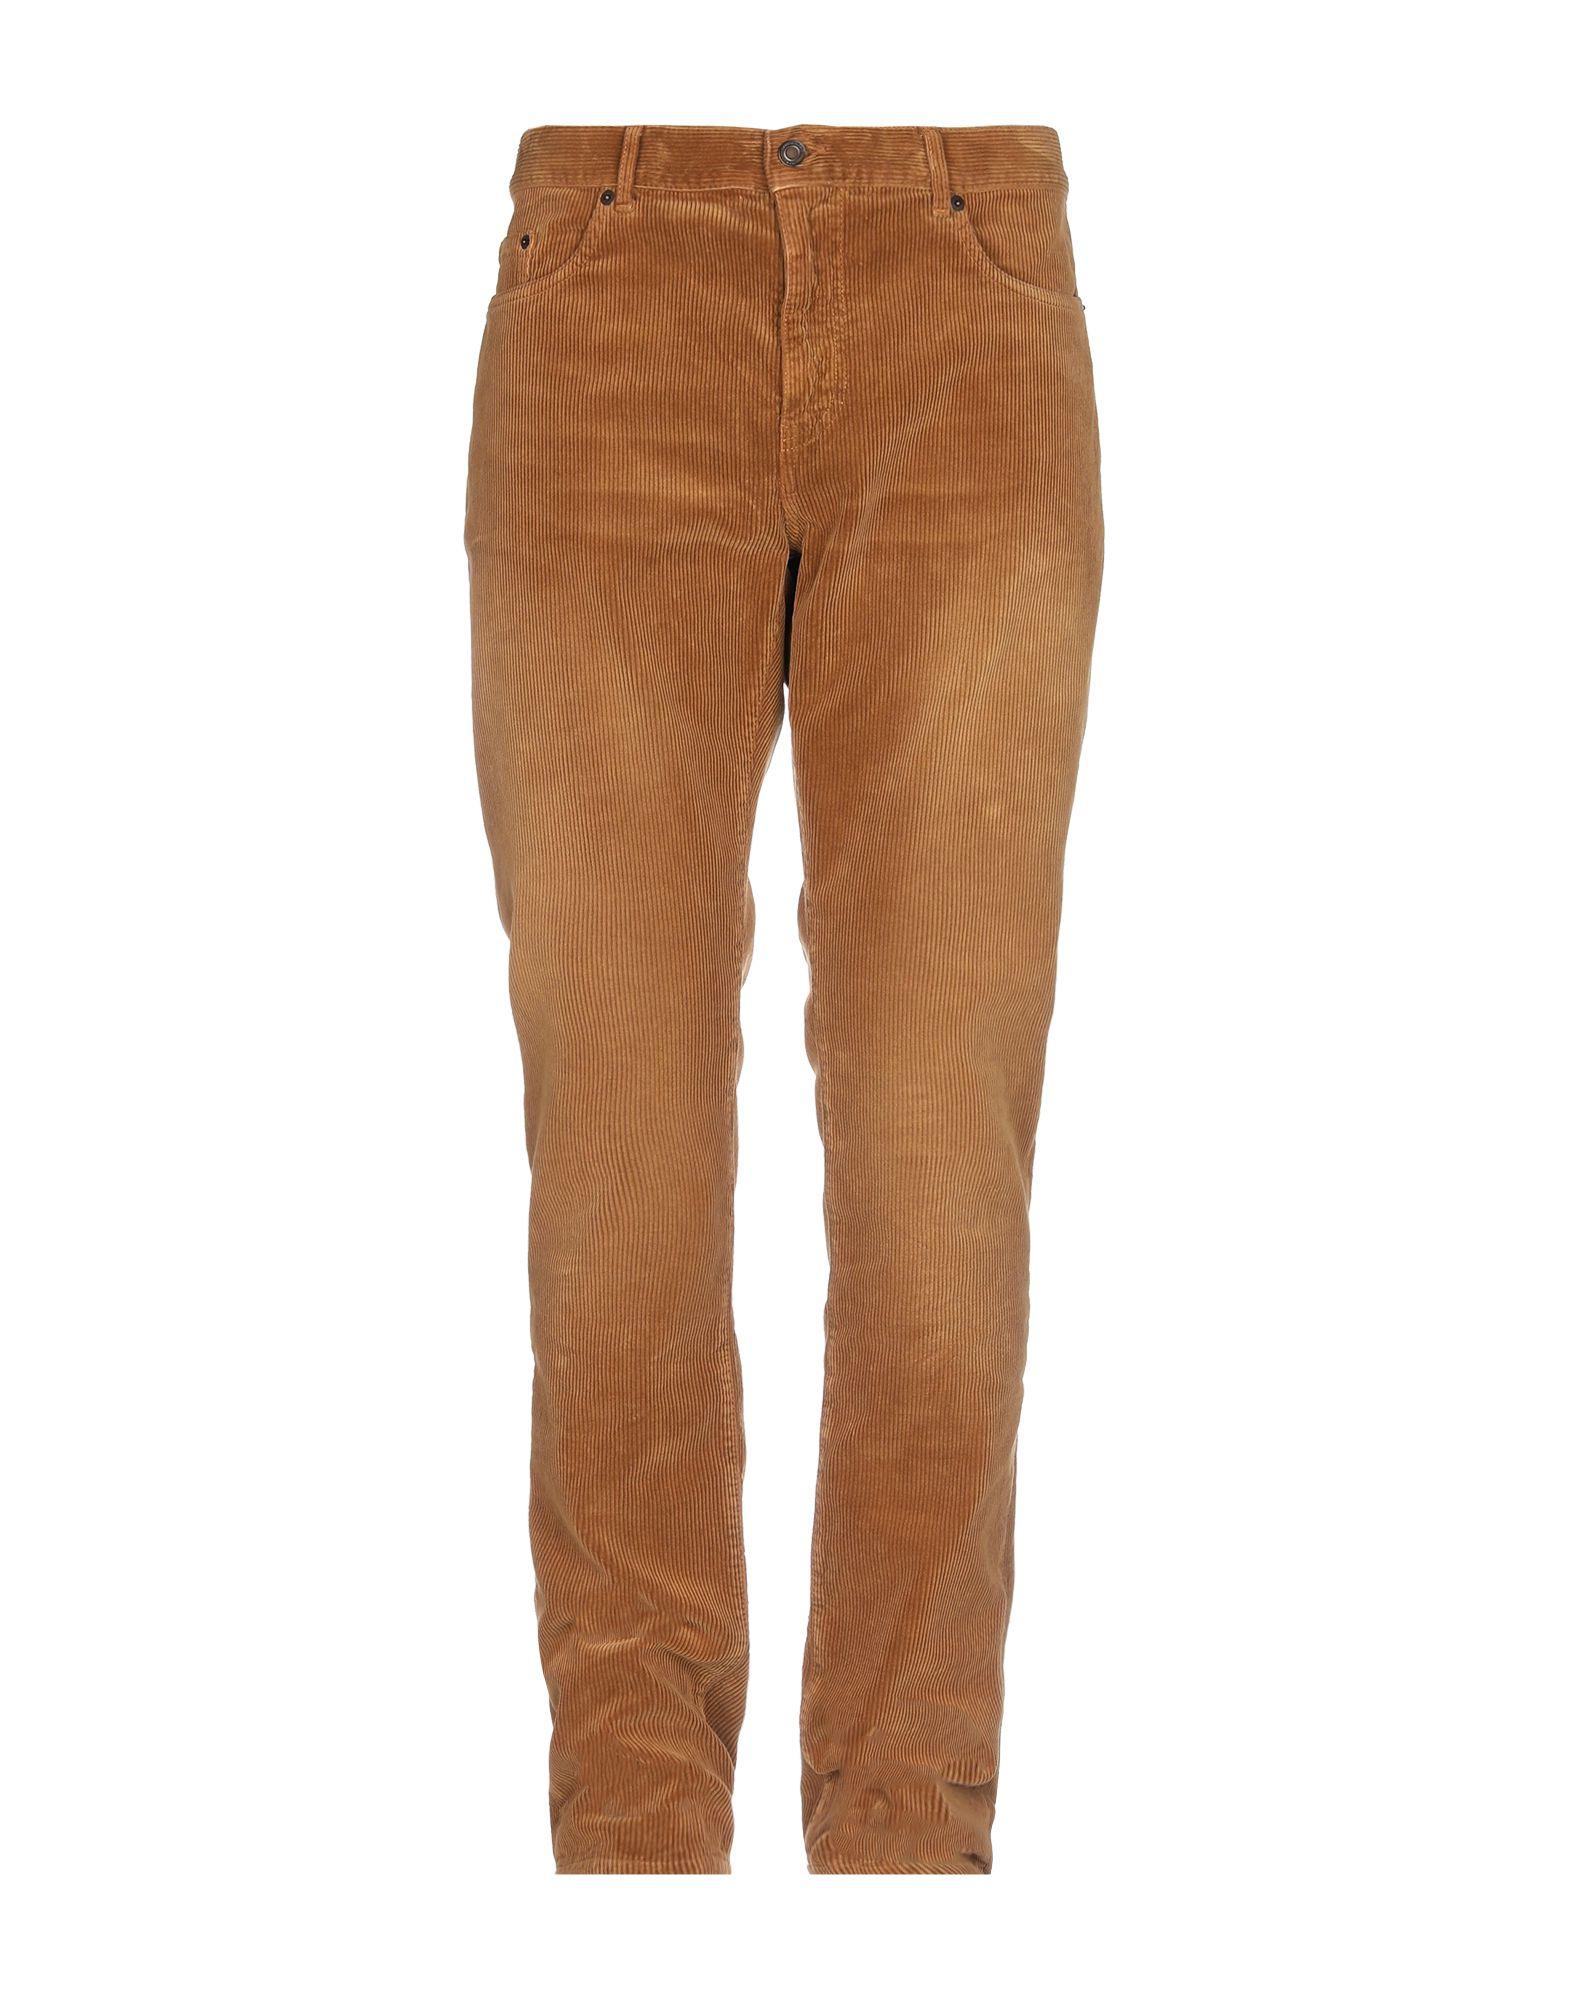 Saint Laurent Velvet Casual Trouser in Camel (Brown) for Men - Lyst